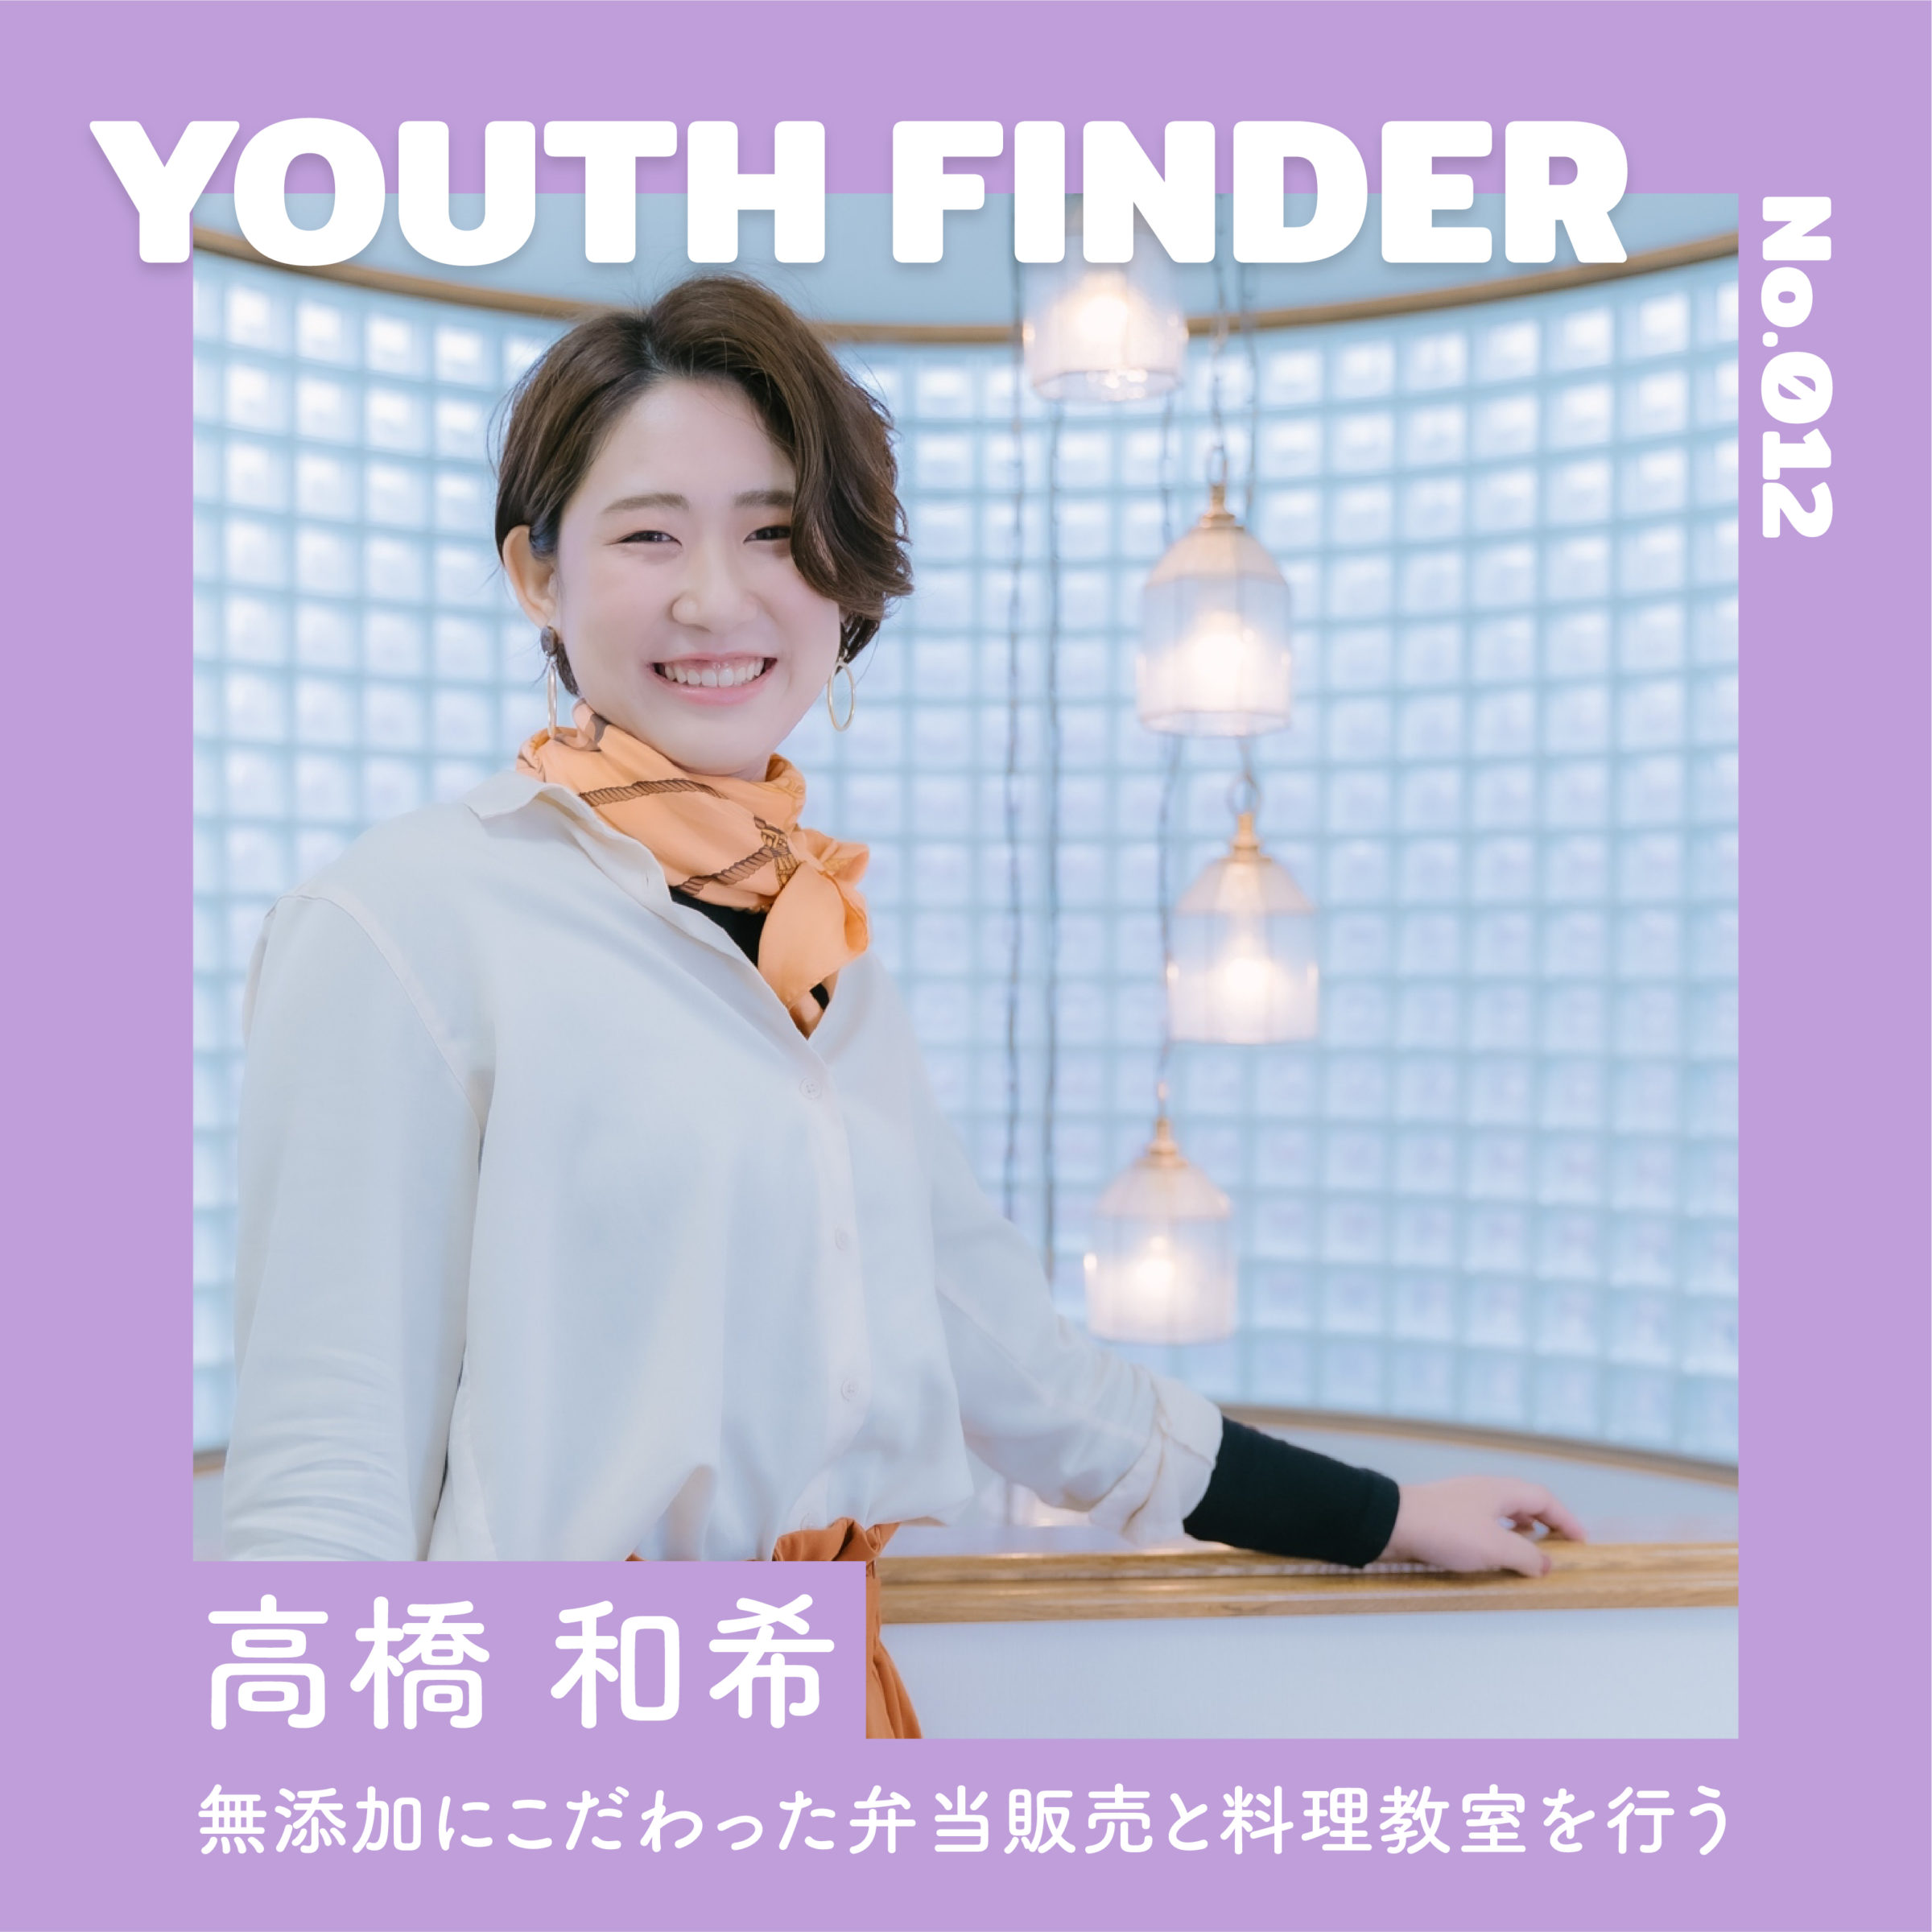 無添加にこだわった弁当販売と料理教室を行う 高橋和希さん【Youth Finder】の画像